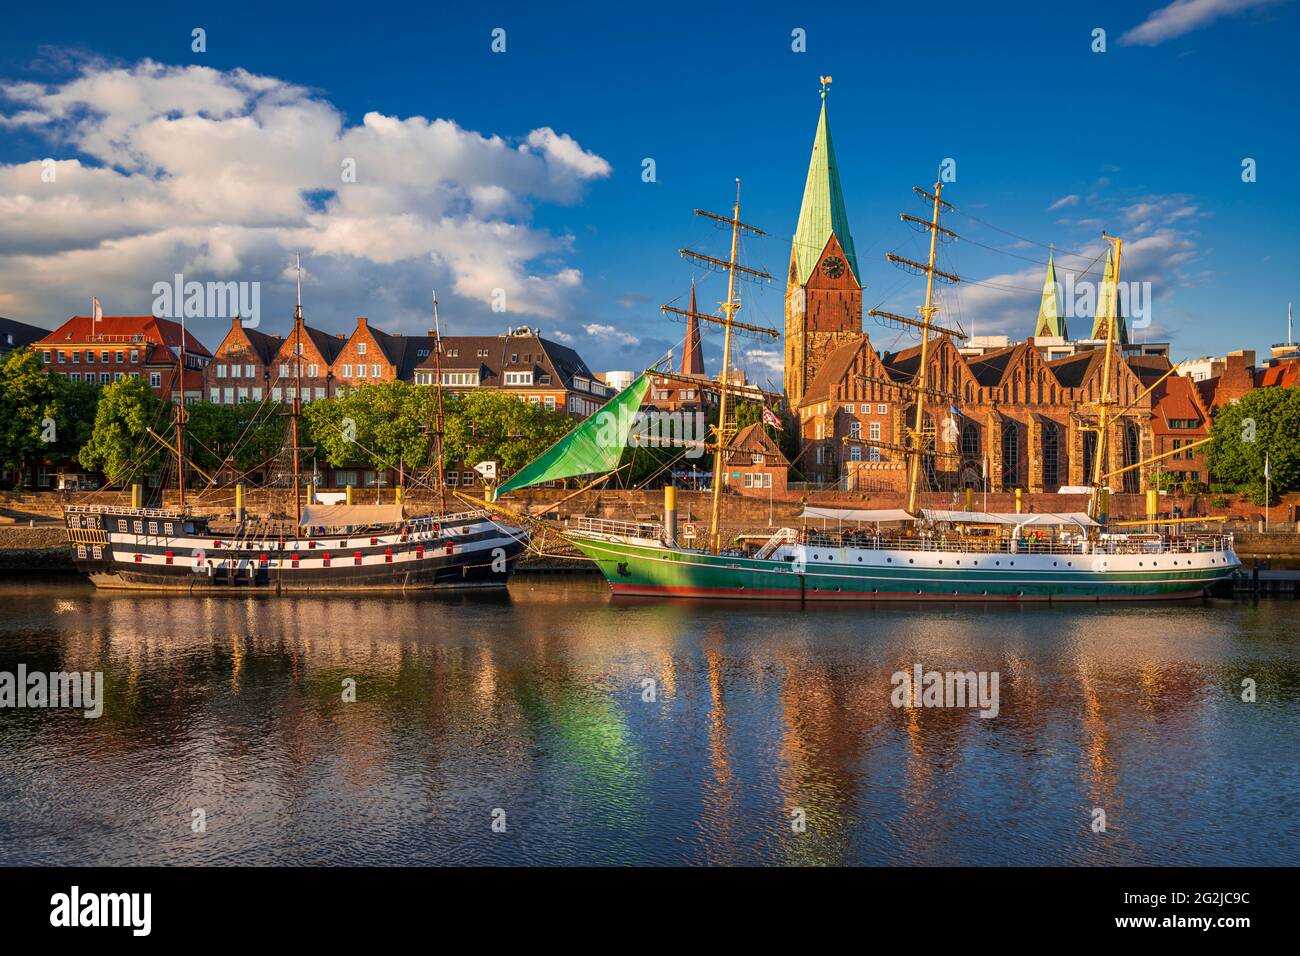 Ciudad histórica de Bremen con antiguos barcos de vela en el río Weser, Alemania Foto de stock